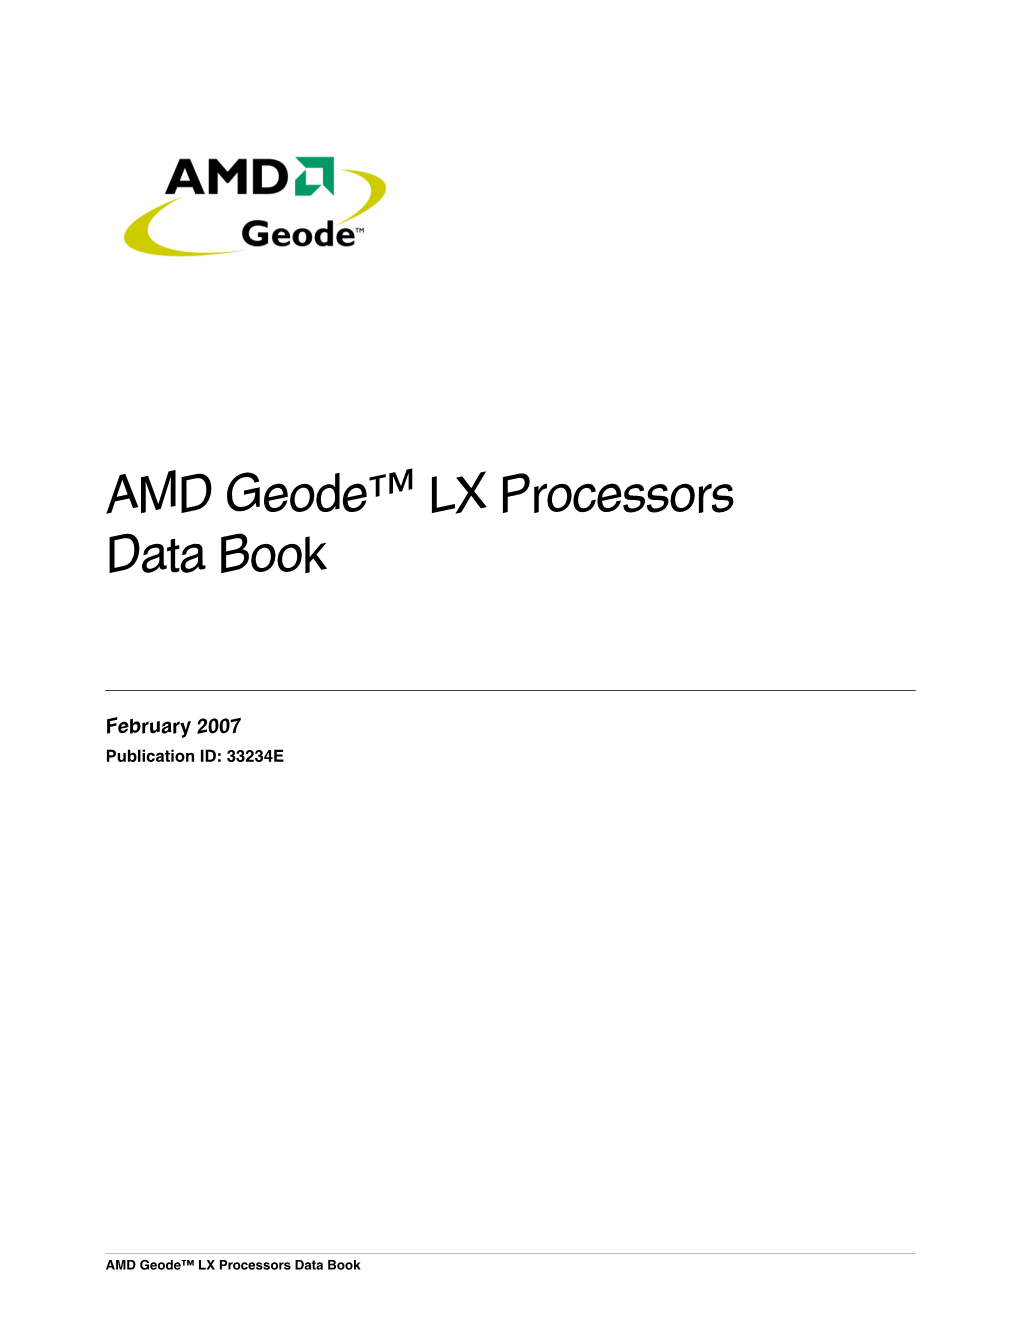 AMD Geode™ LX Processors Data Book